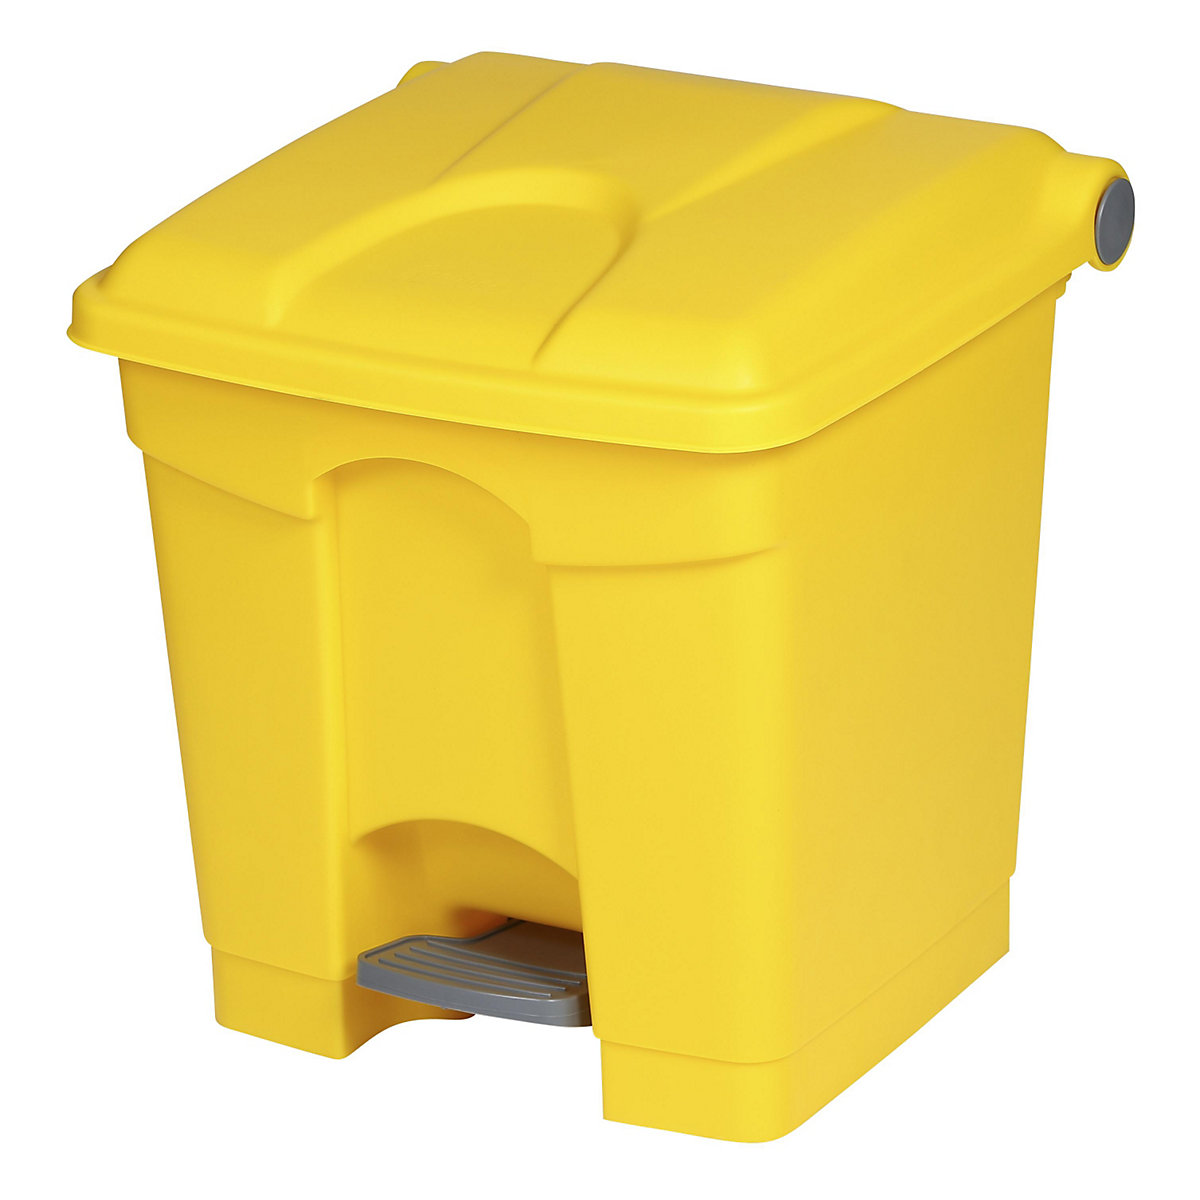 EUROKRAFTbasic – Nádoba na odpad s pedálem, objem 30 l, š x v x h 410 x 435 x 400 mm, žlutá